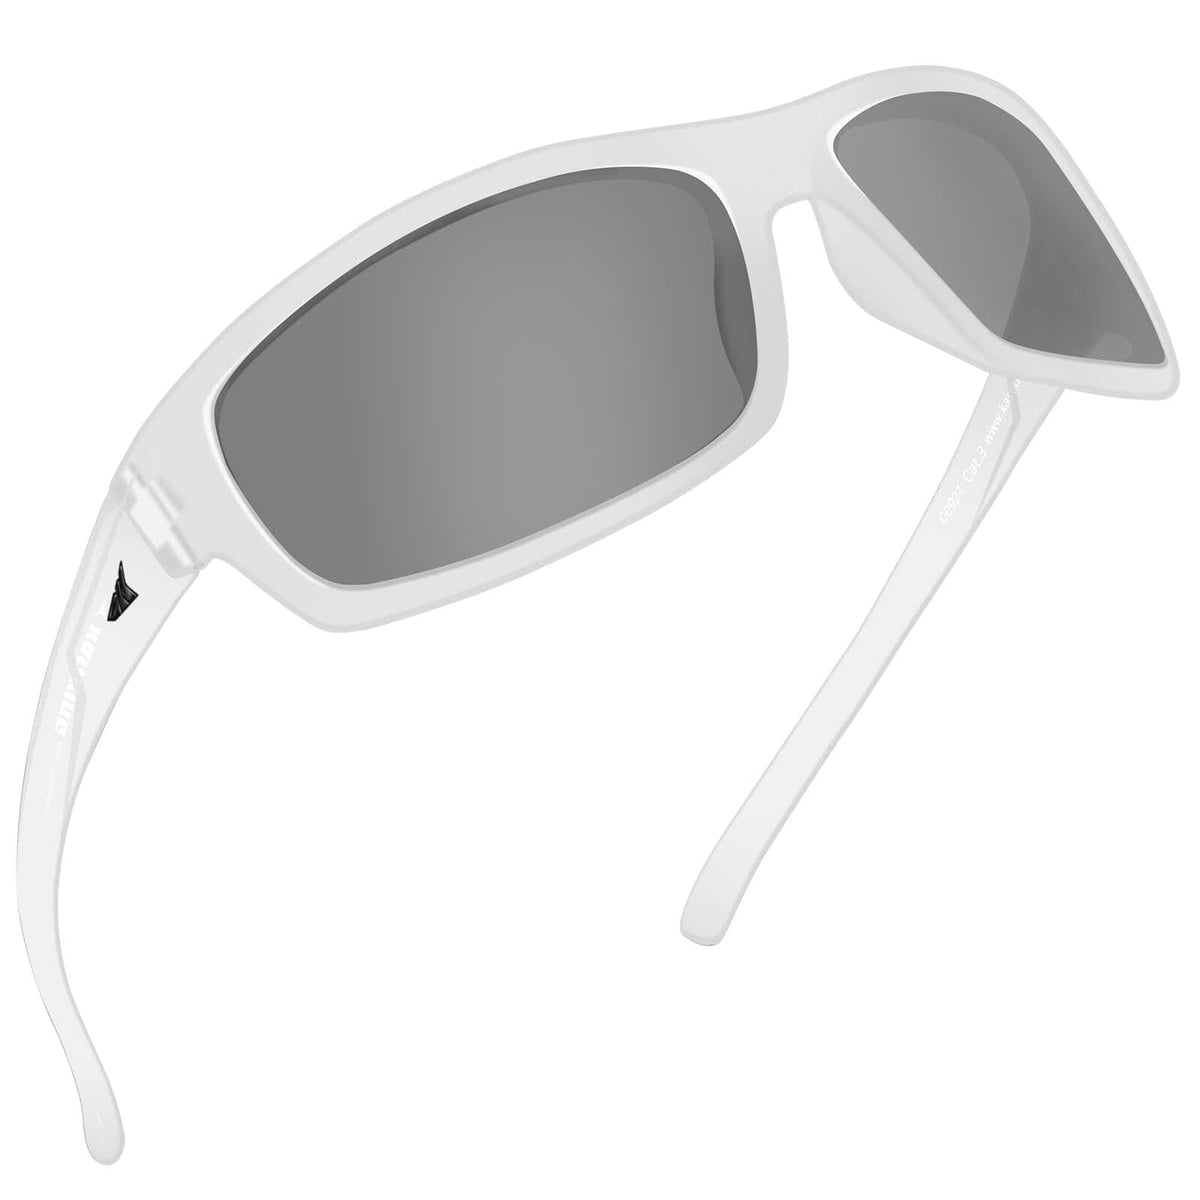 KastKing Kateel Polarized Sport Sunglasses for Men and Women